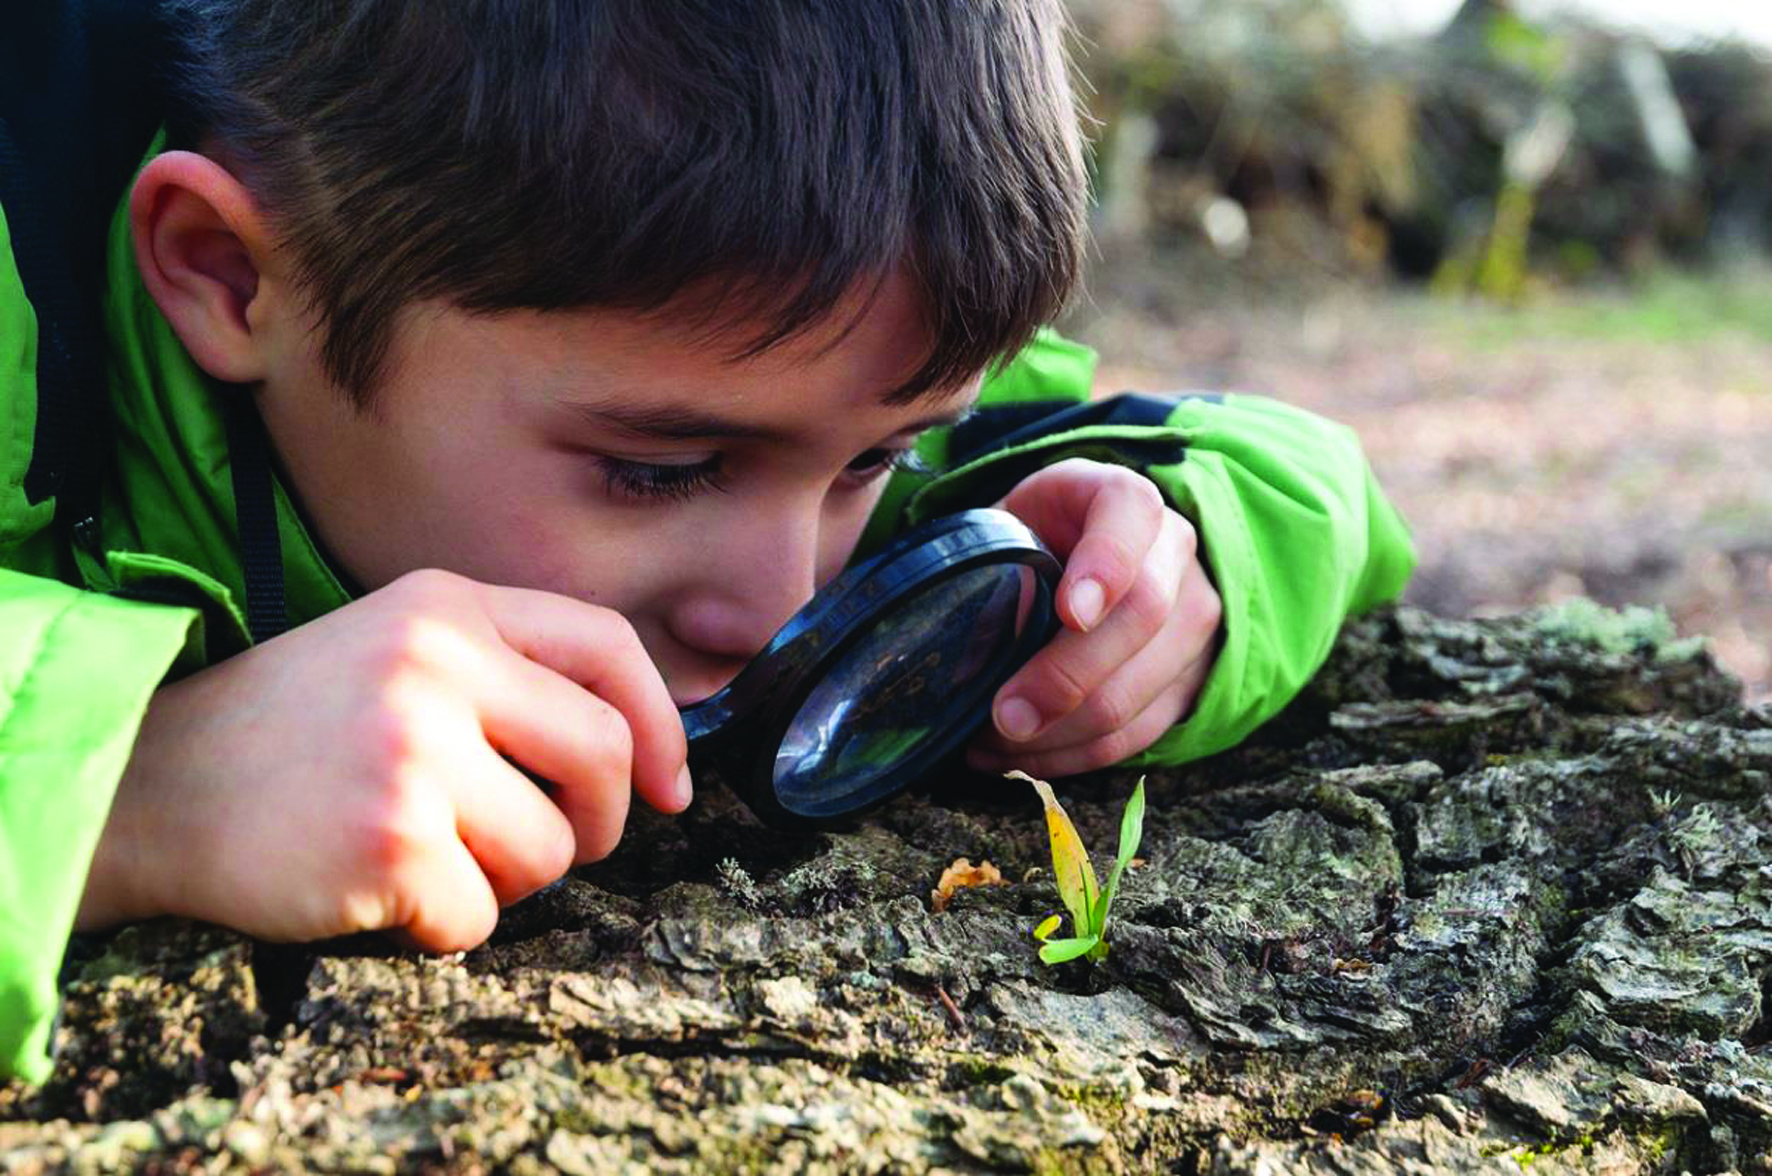 Земли следить за человеком. Дети изучают природу. Ребенок наблюдает. Ддетти наблюдают за природой. Изучение природы.